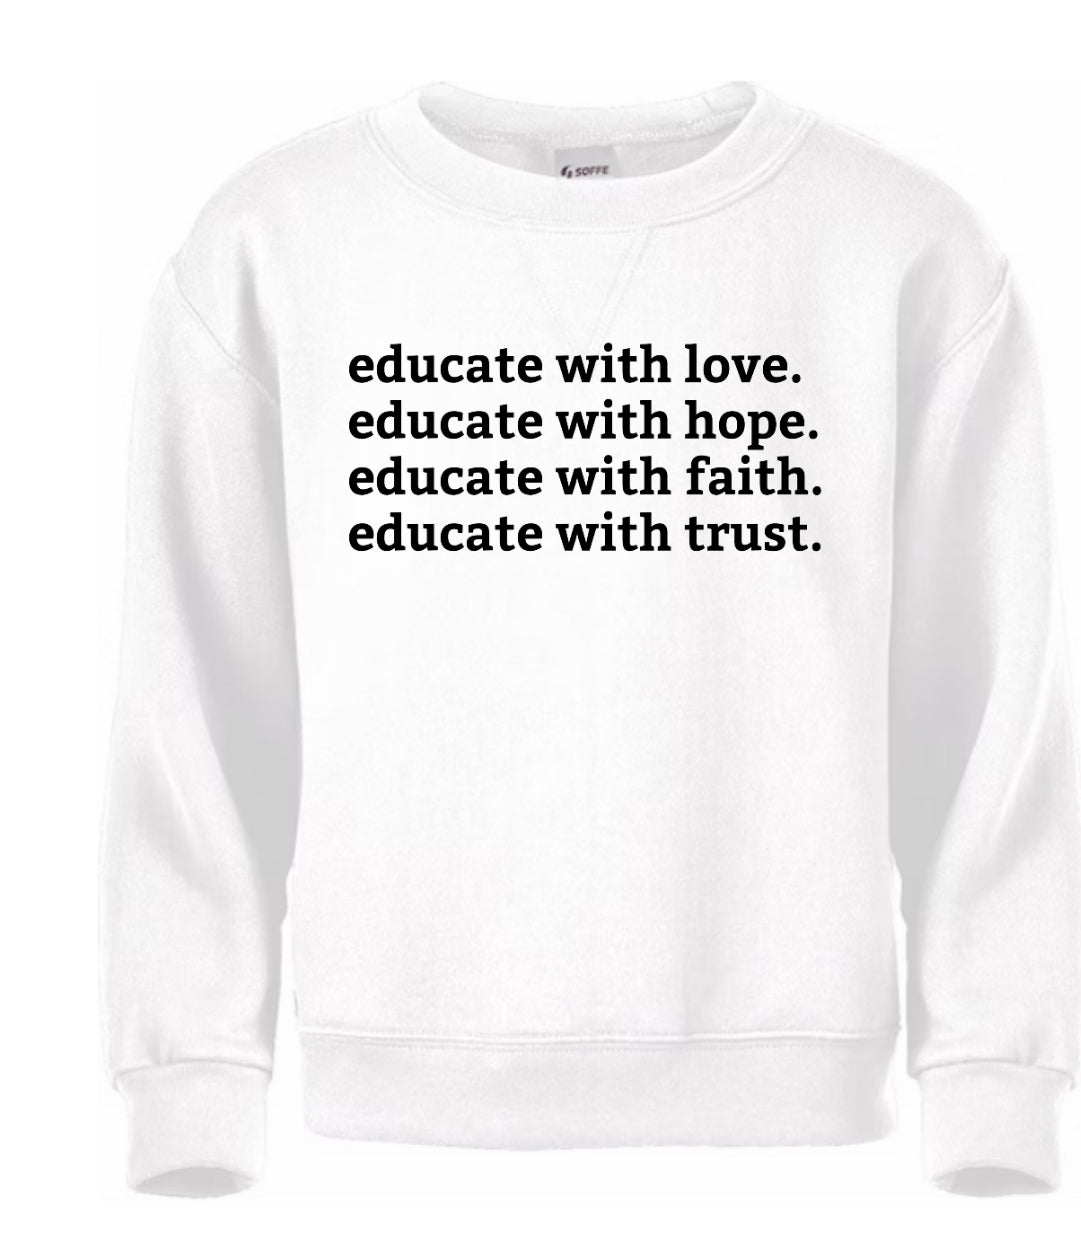 Educate w/ Love Sweatshirt